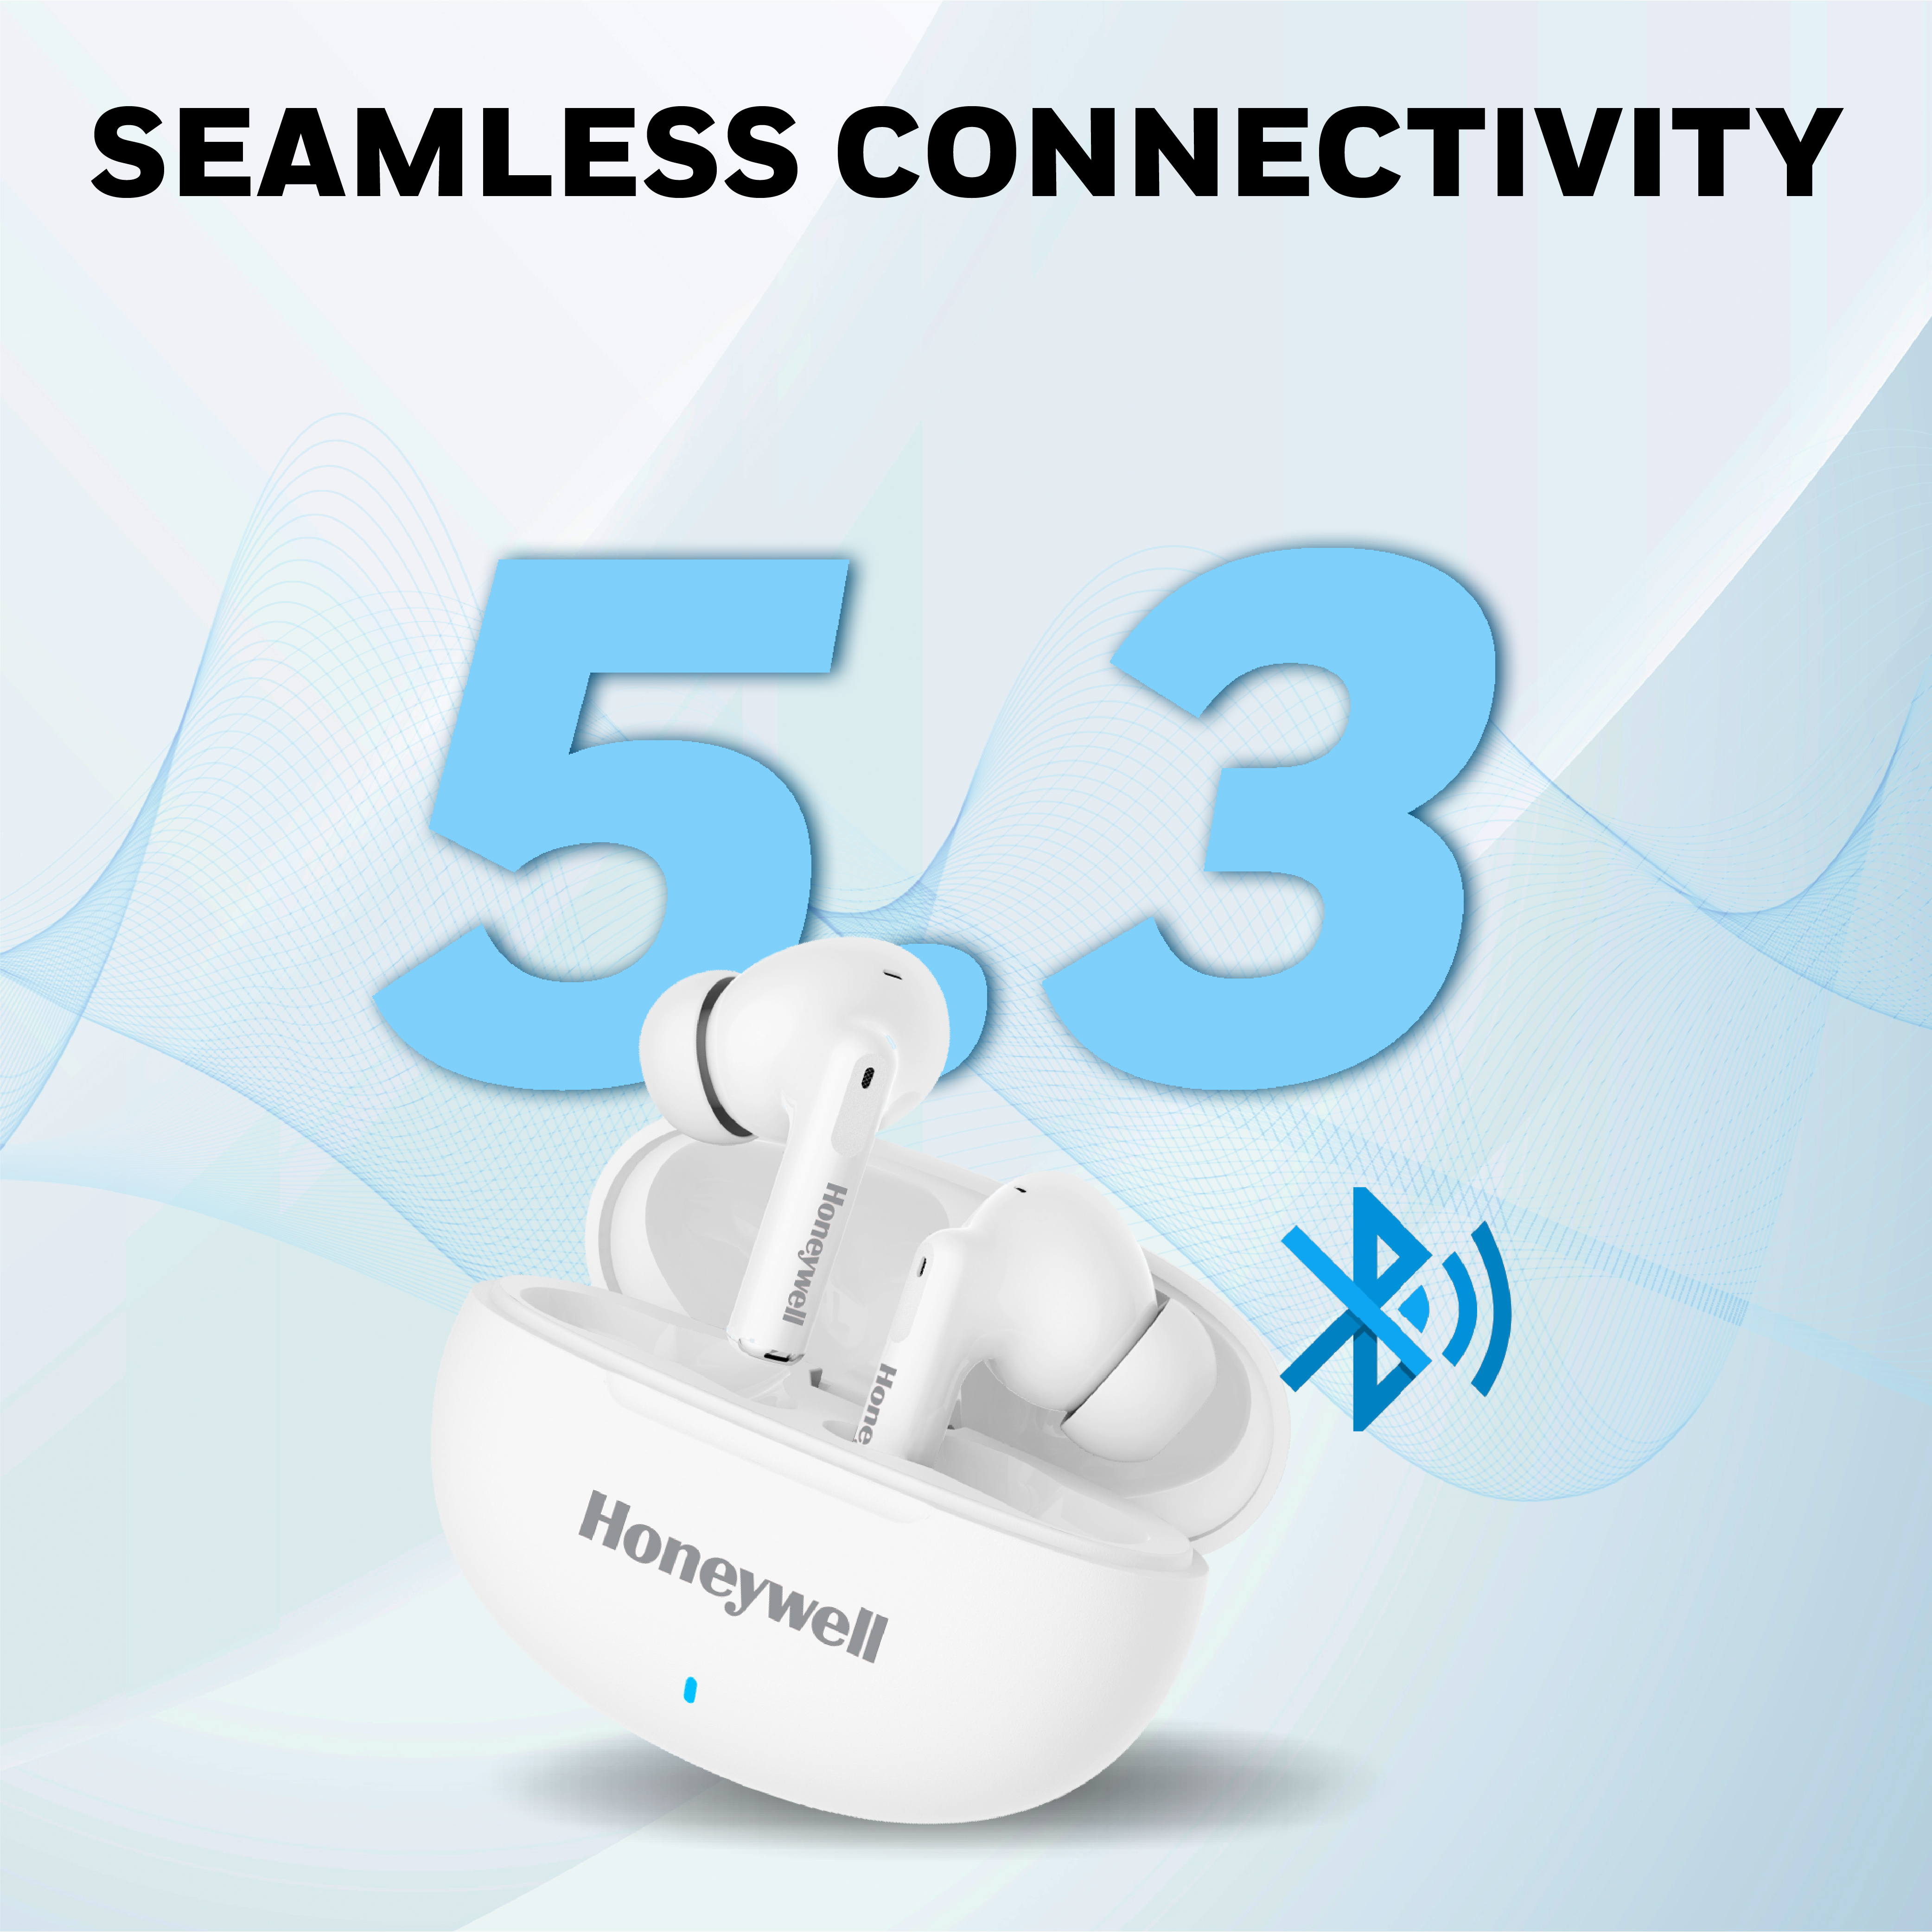 Honeywell Moxie V1200 Bluetooth TWS Earbuds - White